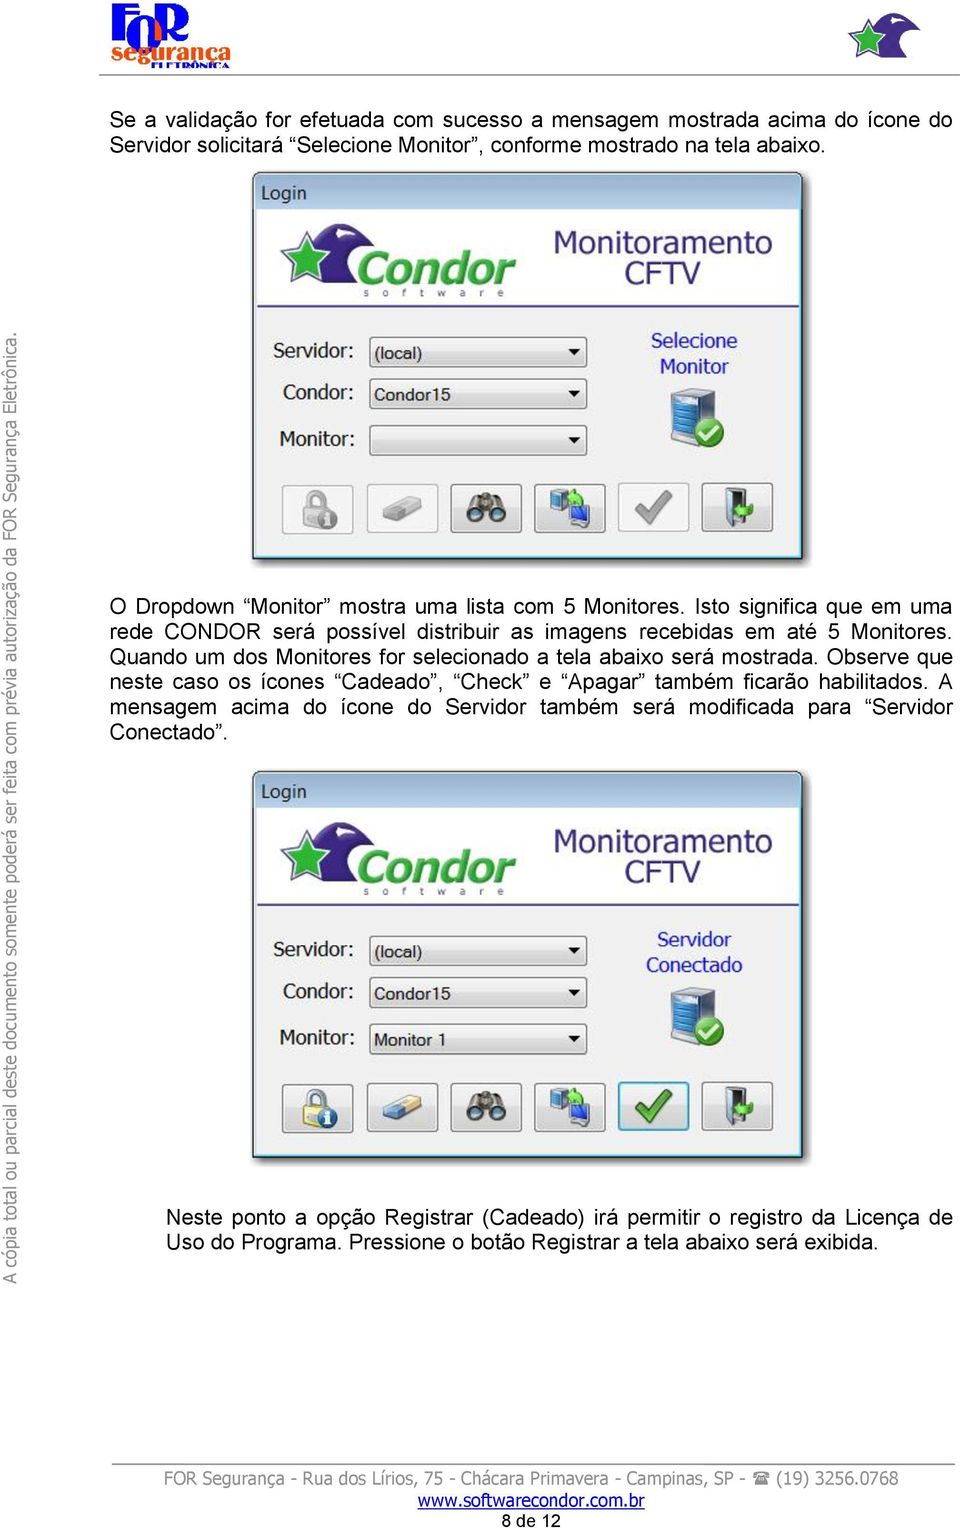 Isto significa que em uma rede CONDOR será possível distribuir as imagens recebidas em até 5 Monitores. Quando um dos Monitores for selecionado a tela abaixo será mostrada.